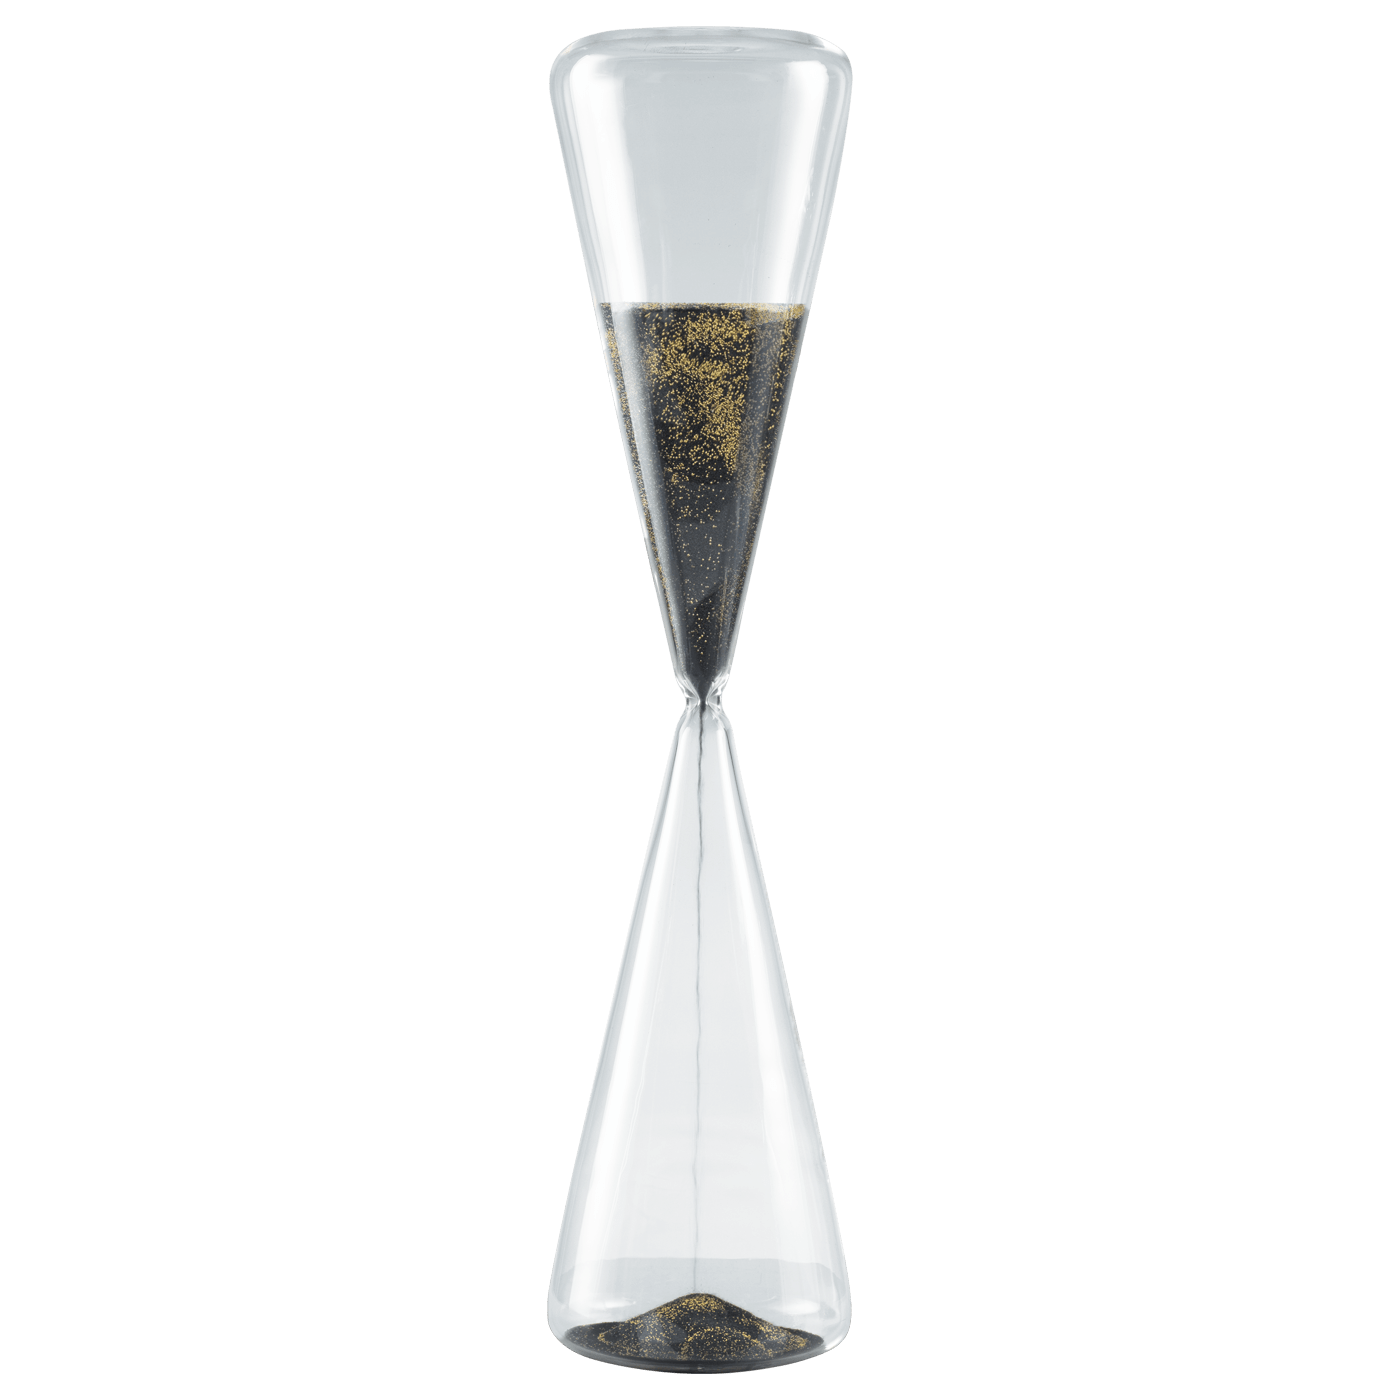 Clessidra in vetro con sabbia bicolore nero e oro altezza 50 cm - Dolci pensieri gift